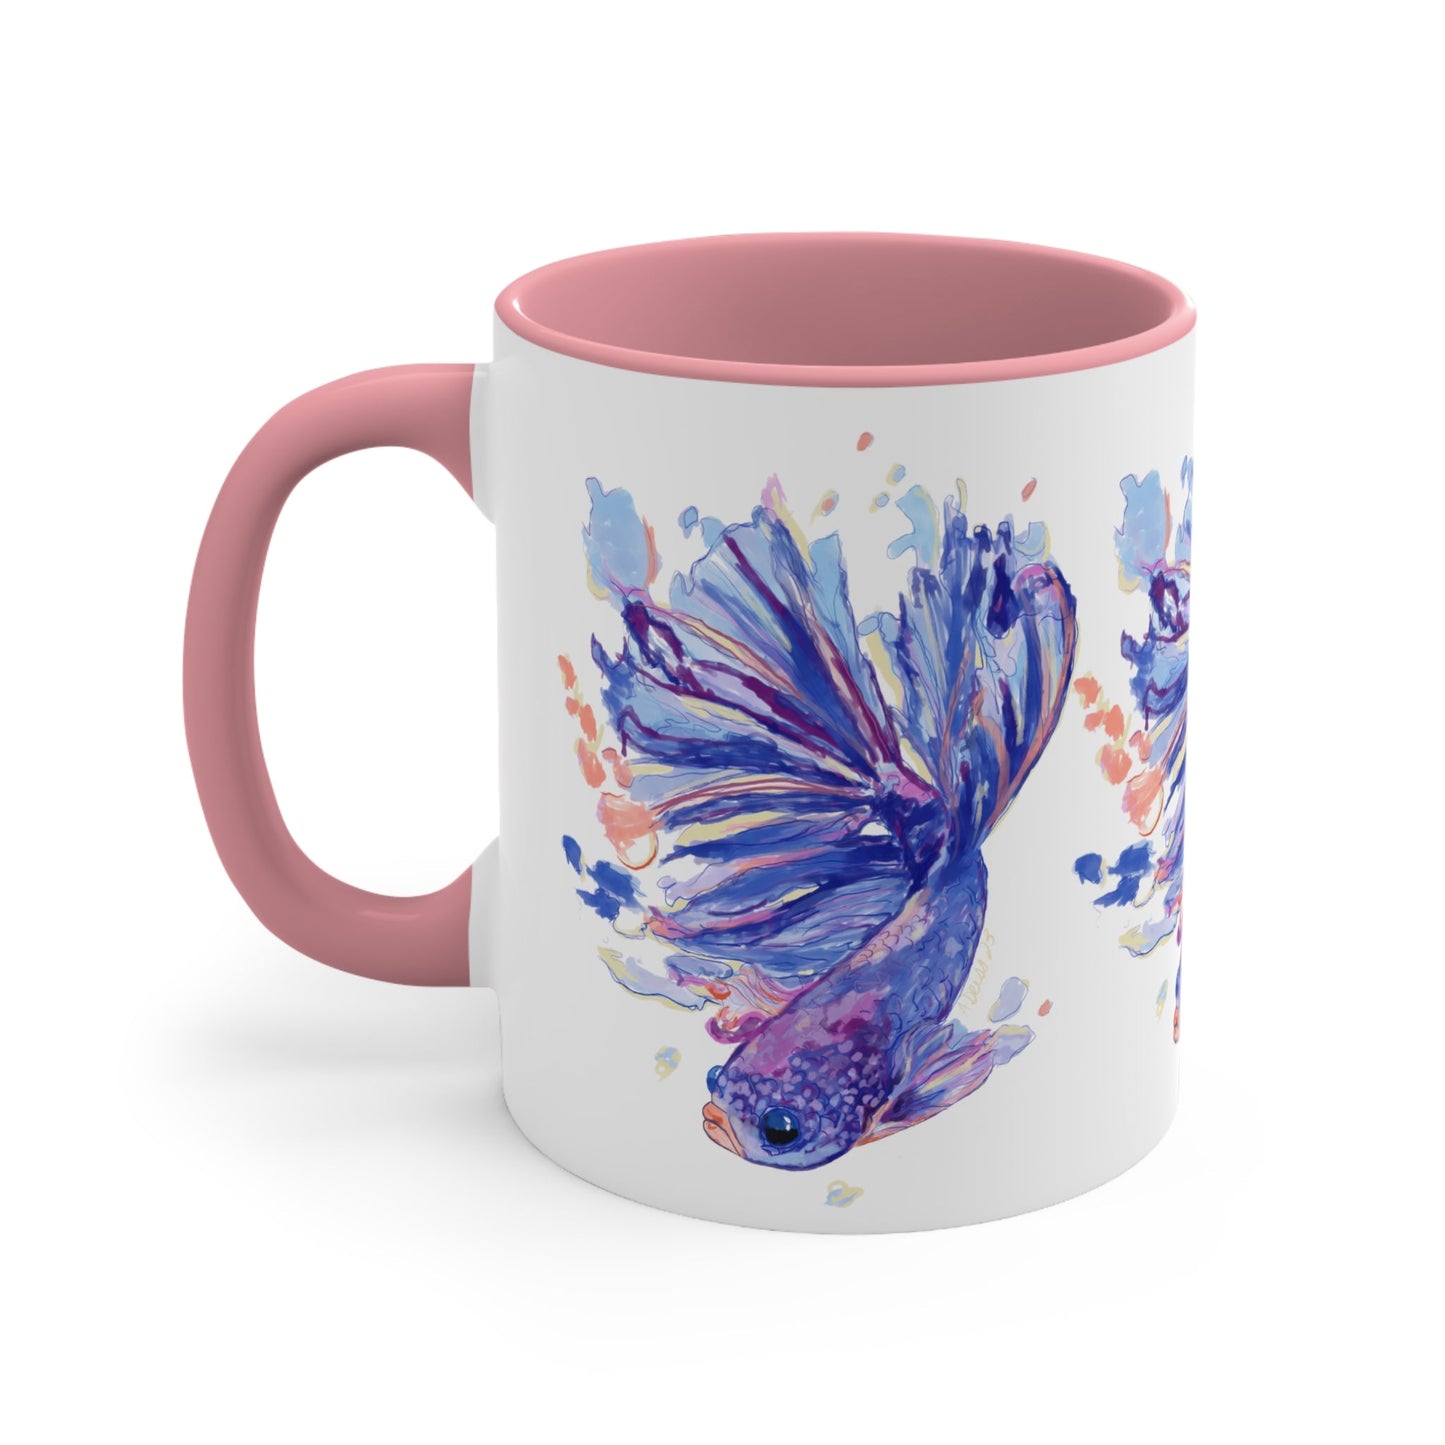 Watercolor Fish Accent Coffee Mug, 11oz - Blue Cava